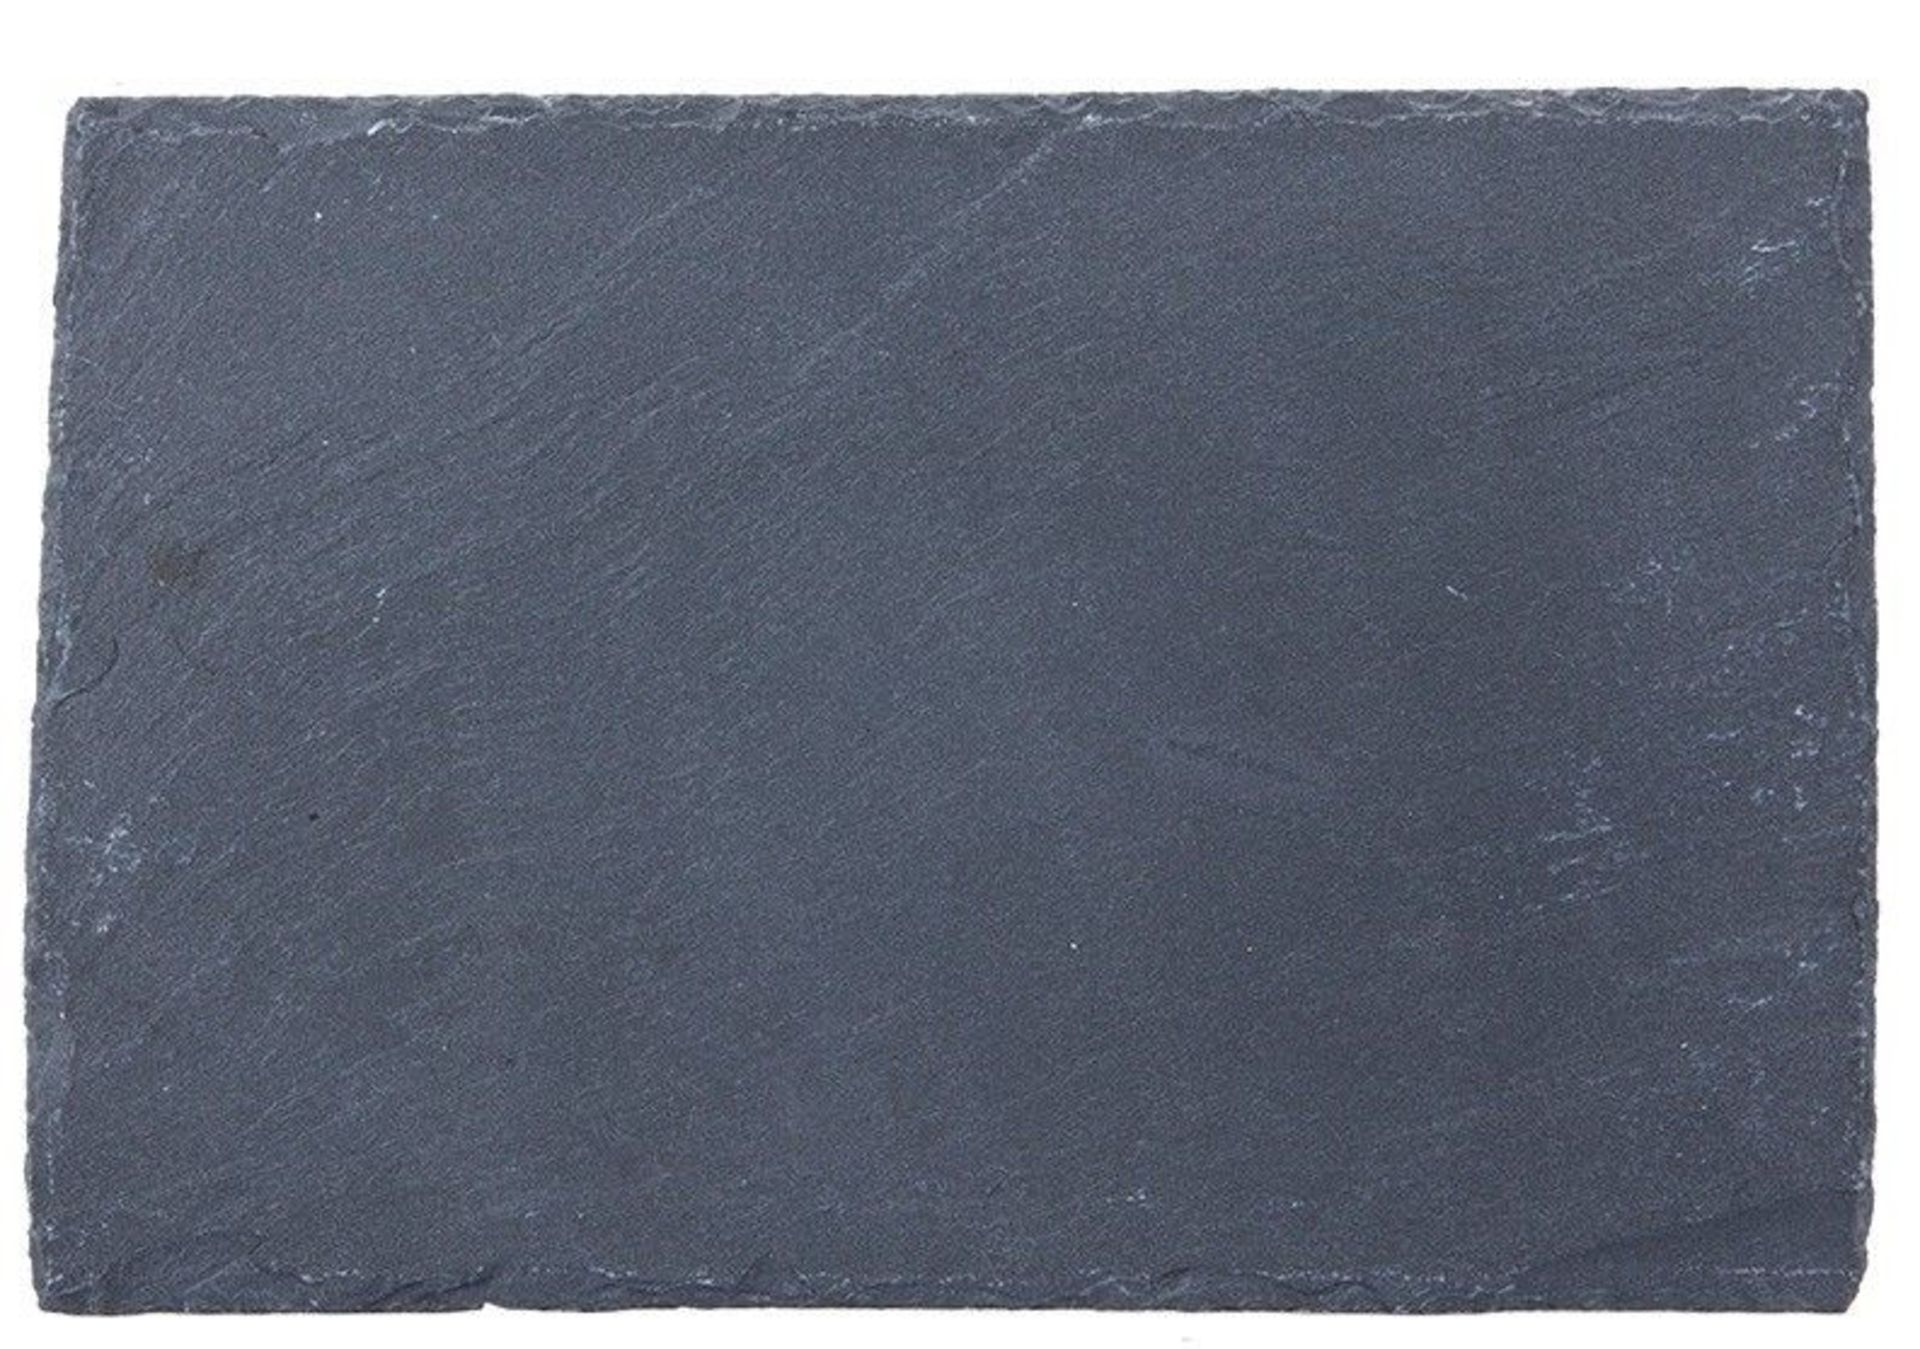 V Brand New Slate 30 x 20cm Tapas Serving Board With Non-Slip Feet ISP £10.78 (ebay)